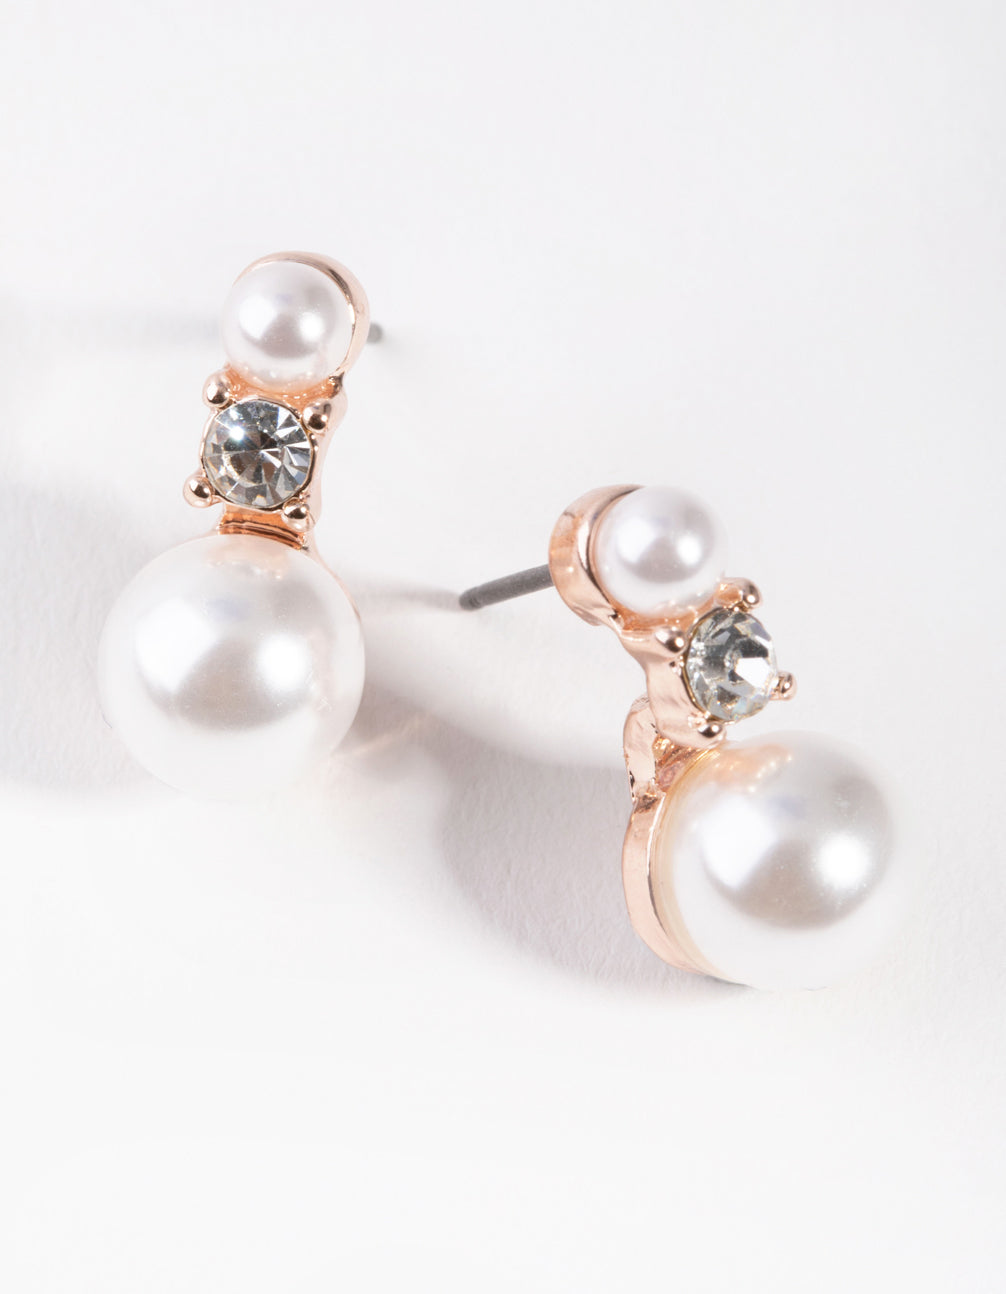 Pearl earrings - Depop